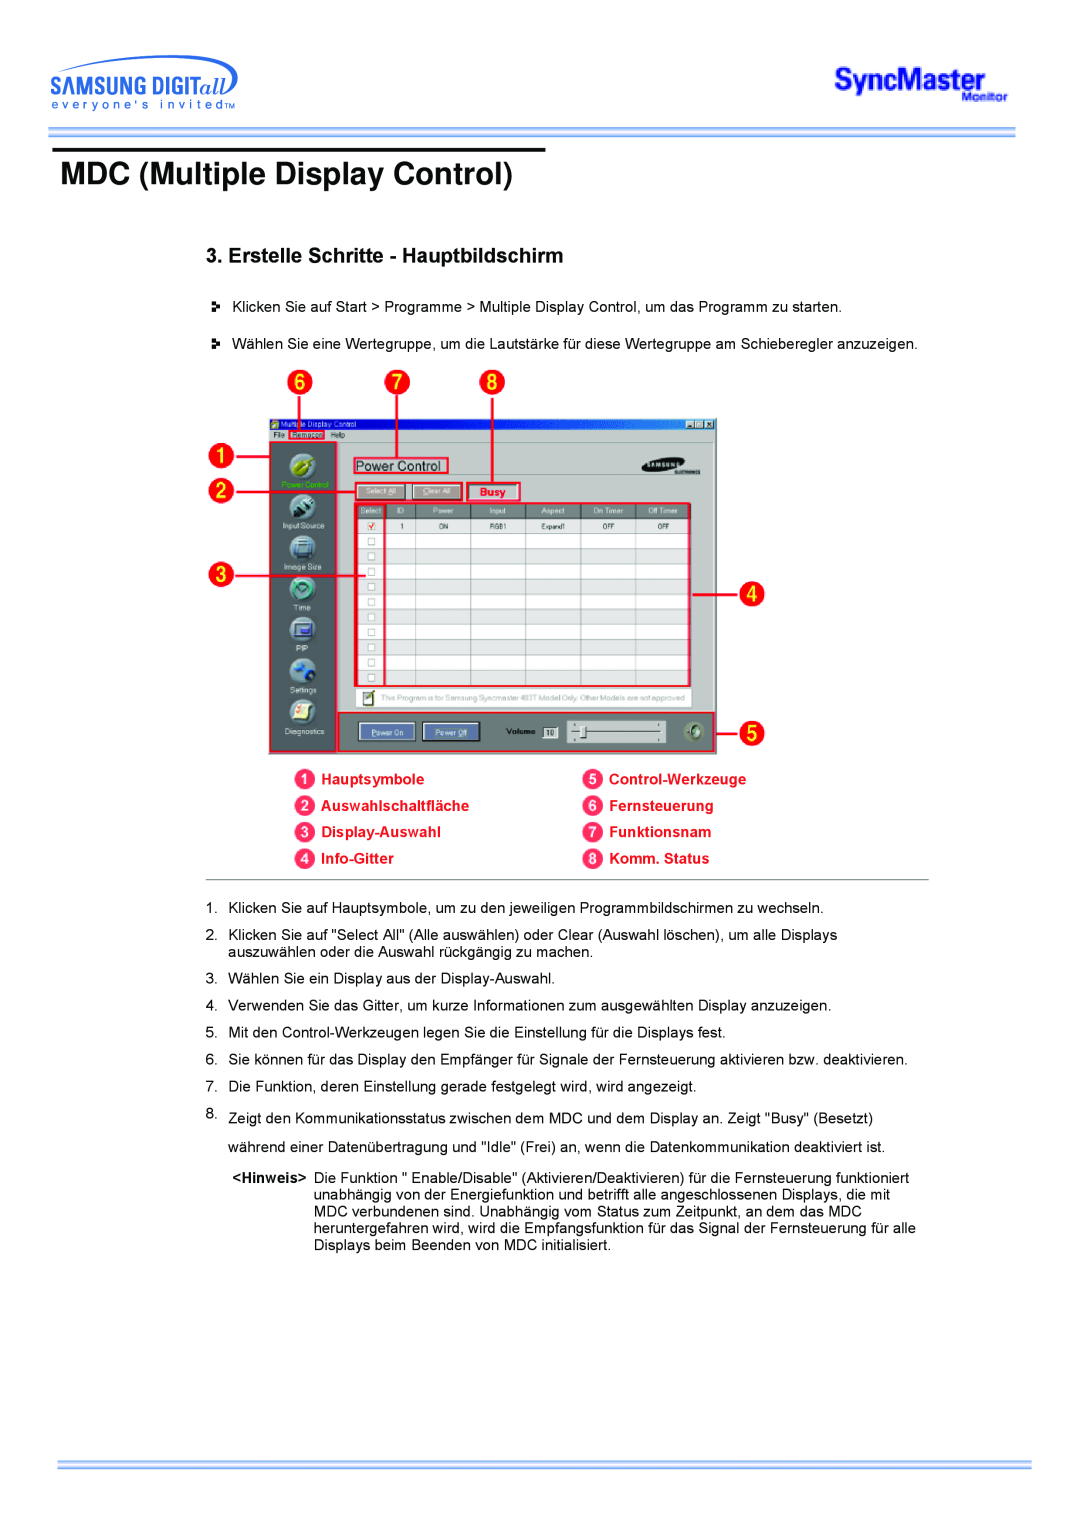 Samsung CK40PSNB/EDC Erstelle Schritte - Hauptbildschirm, MDC Multiple Display Control, Hauptsymbole, Control-Werkzeuge 